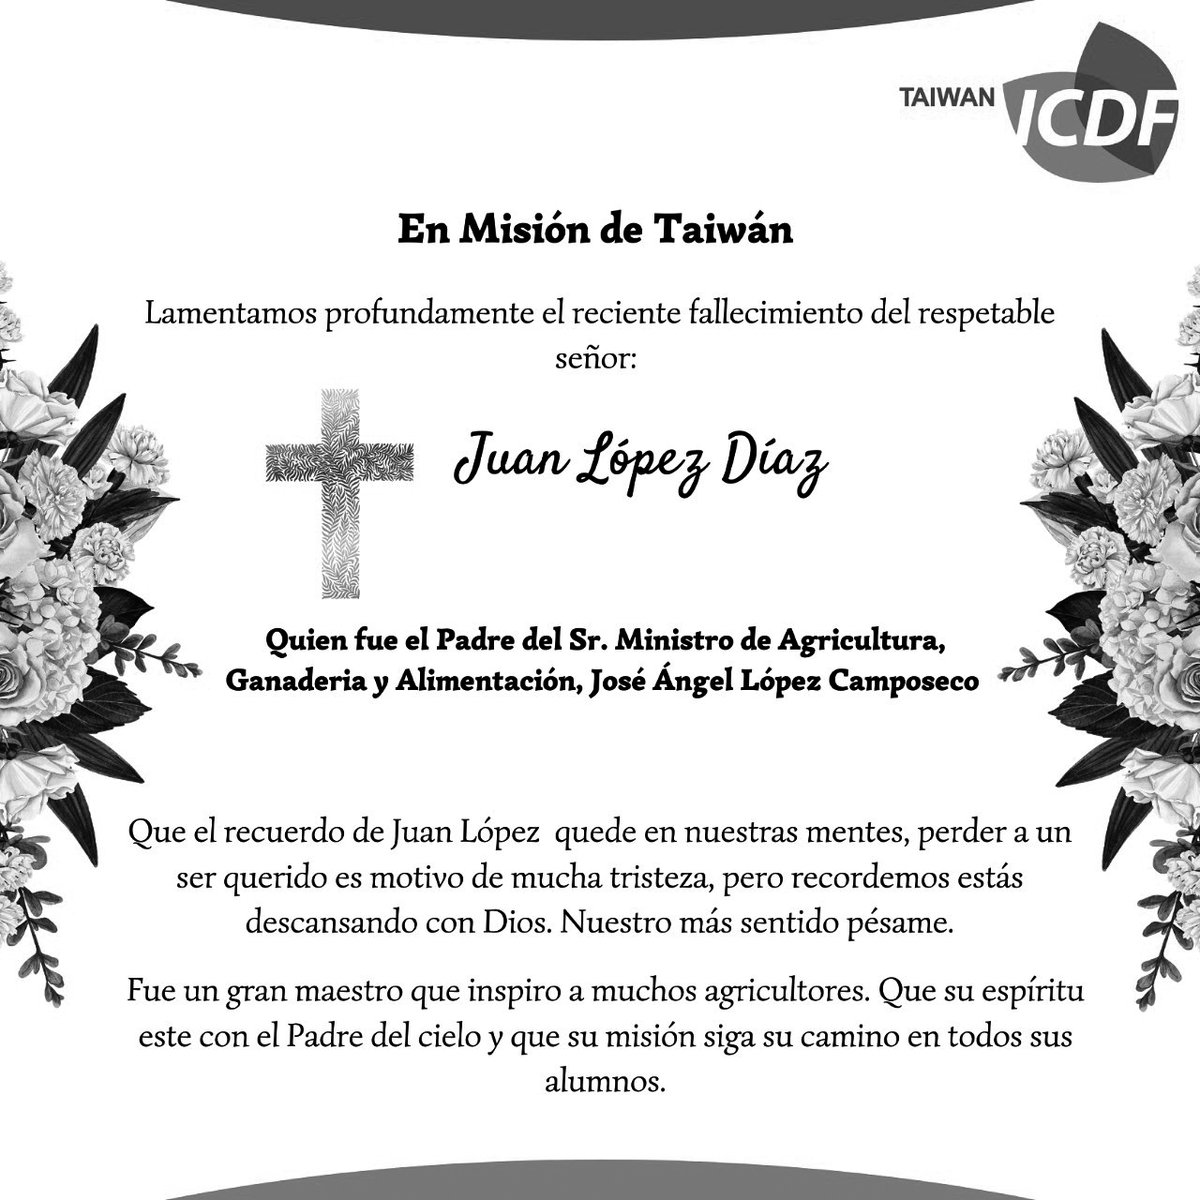 Lamentamos profundamente el reciente fallecimiento del respetable señor: Juan López Díaz. Quien fue el Padre del Sr. Ministro de Agricultura, Ganadería y Alimentación, José Ángel López Camposeco. Que el quede en nuestras mentes.